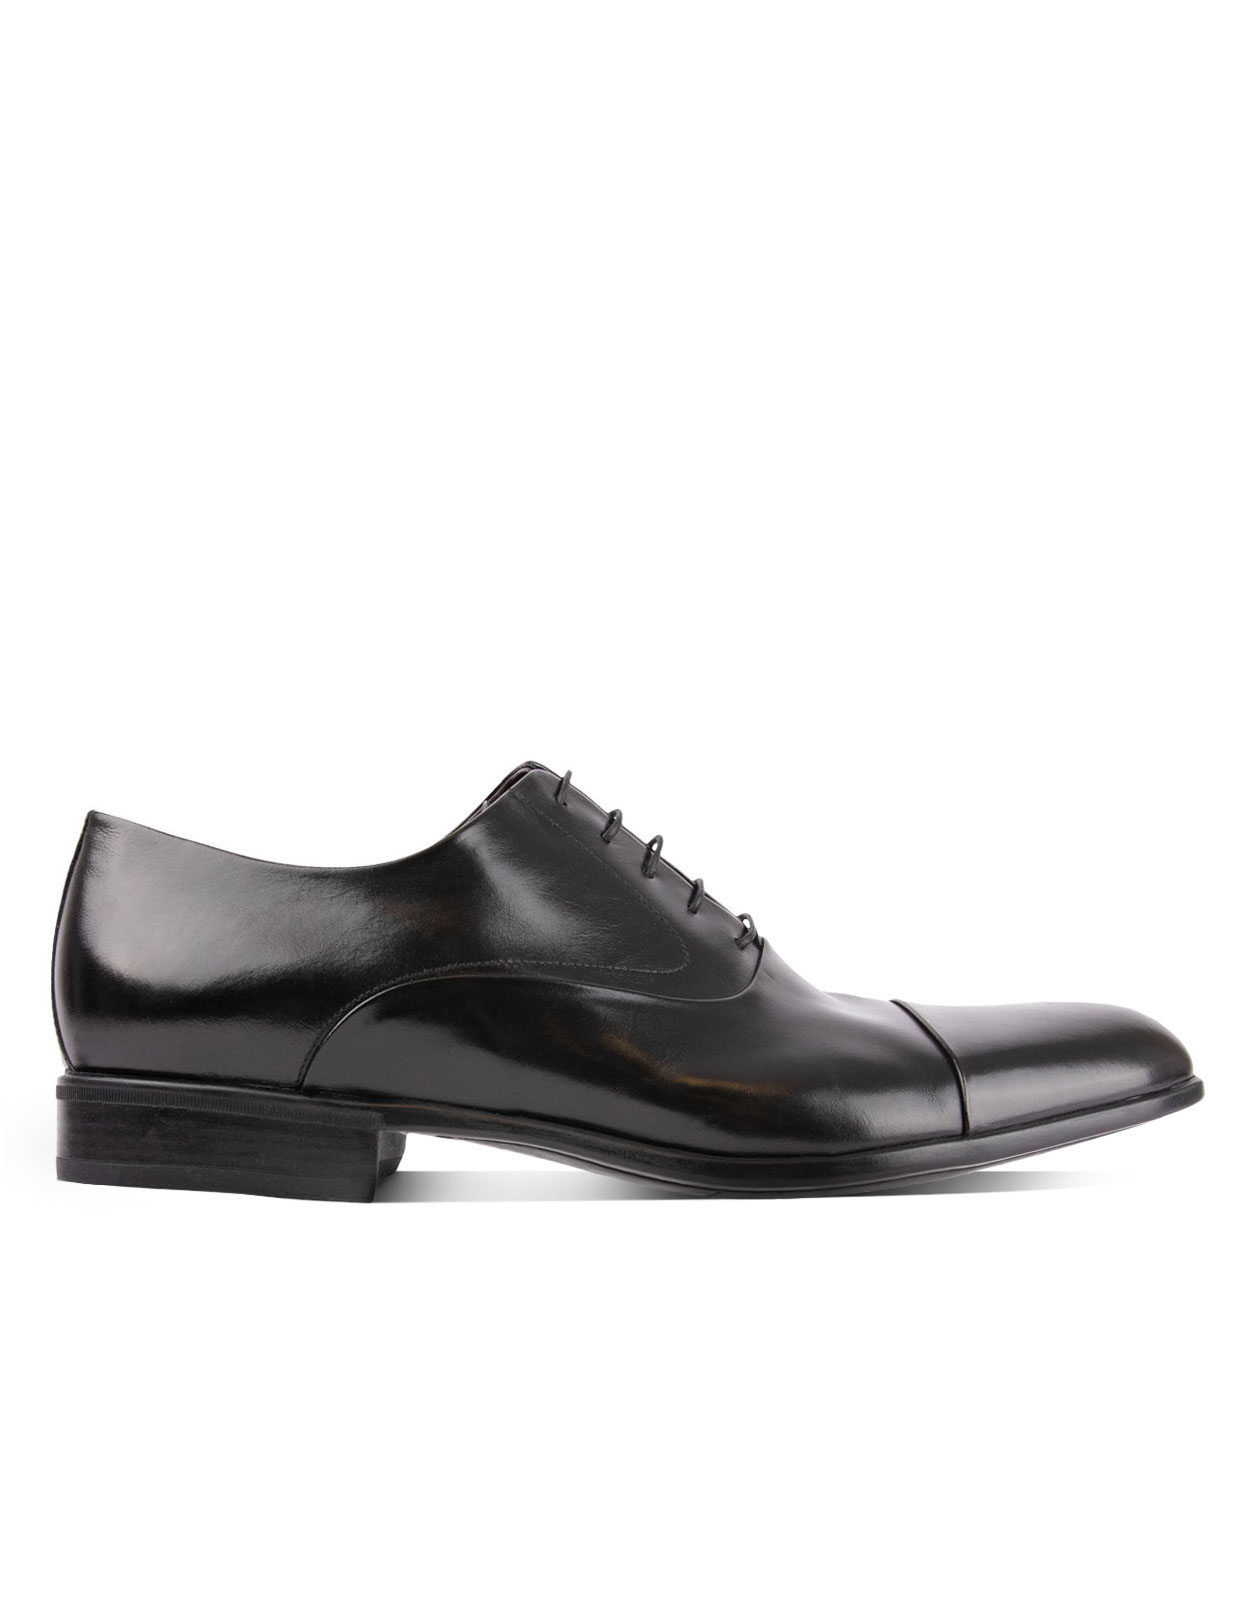 Bruges Oxford Shoe Black Stl 9